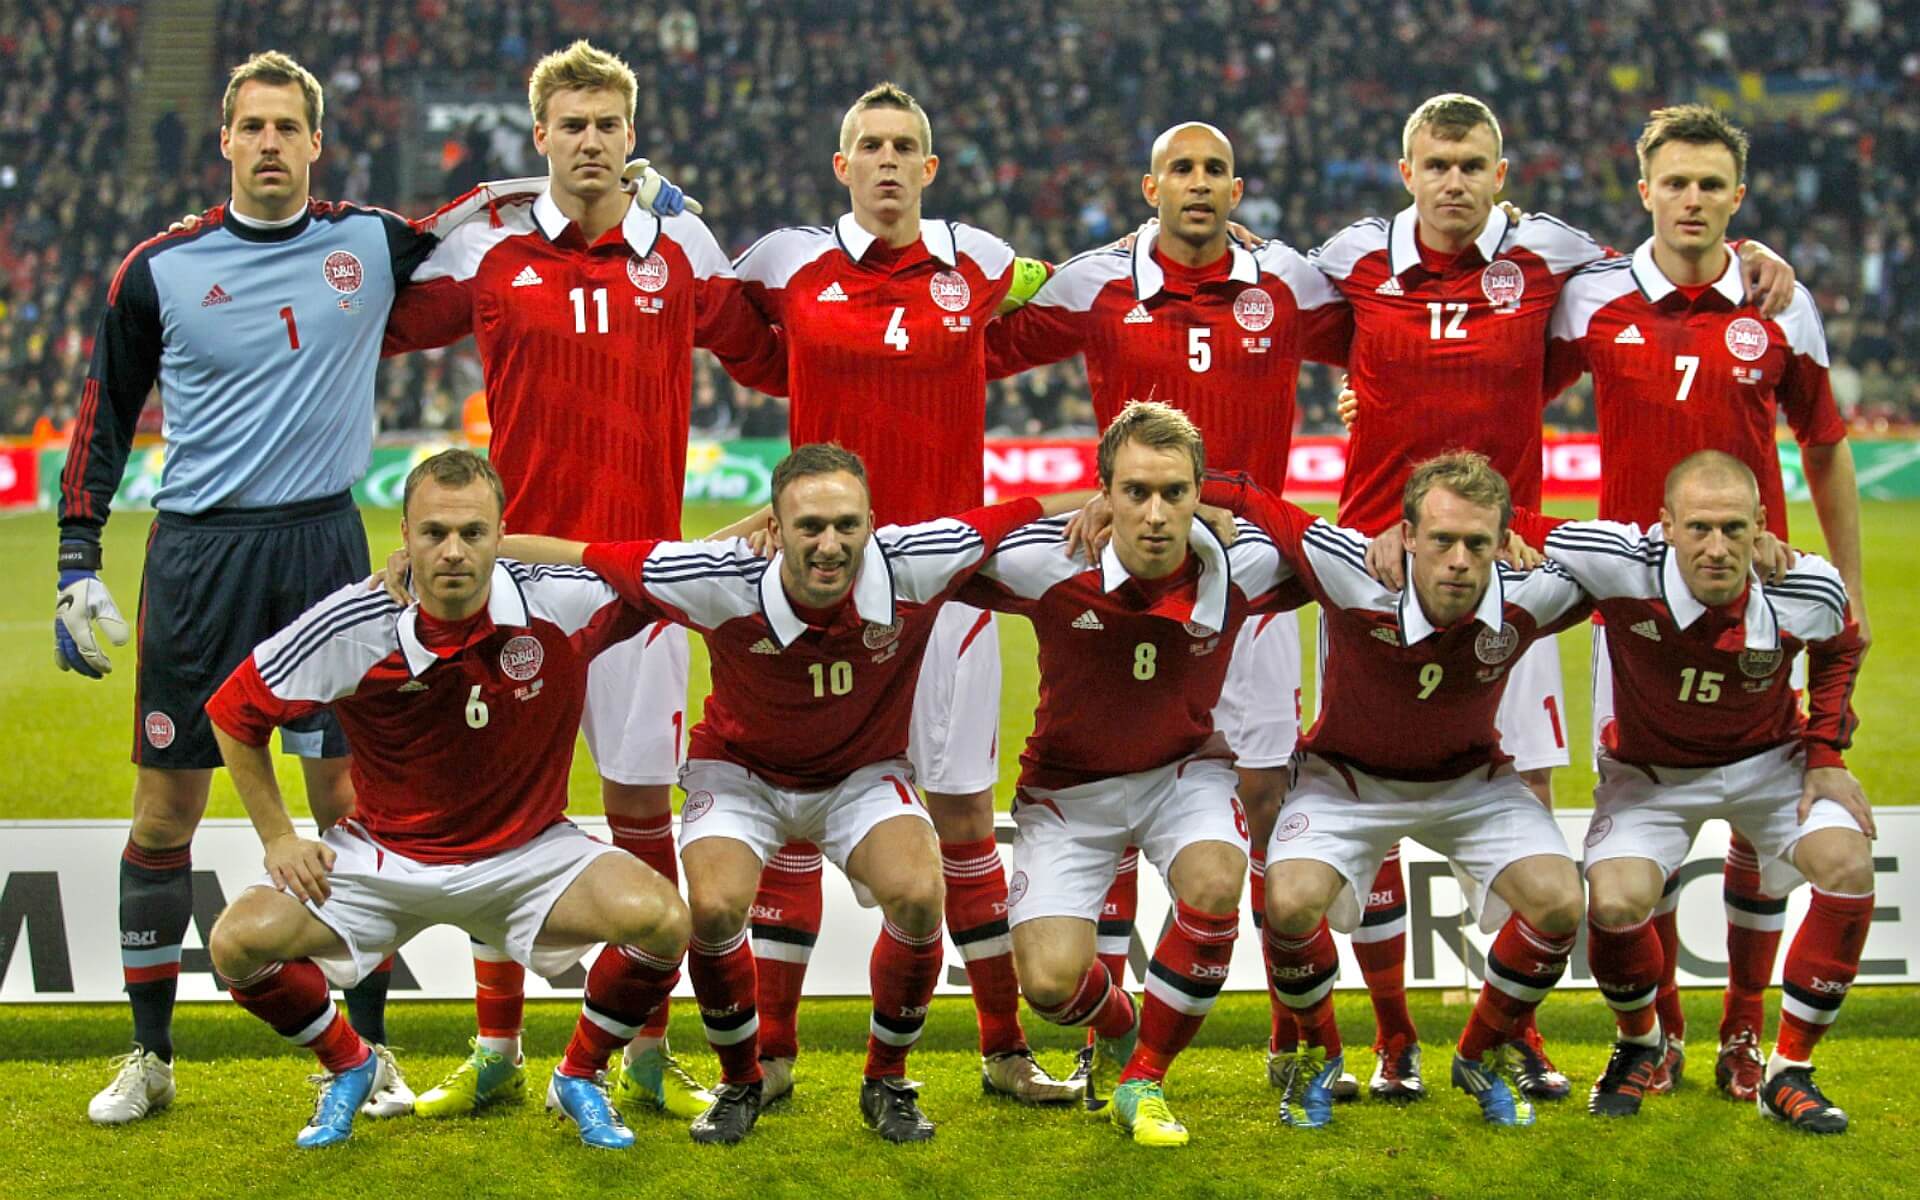 Словакия - Дания: почему коэффициенты упали с 2,6 до 1,04 на победу сборной Словакии?